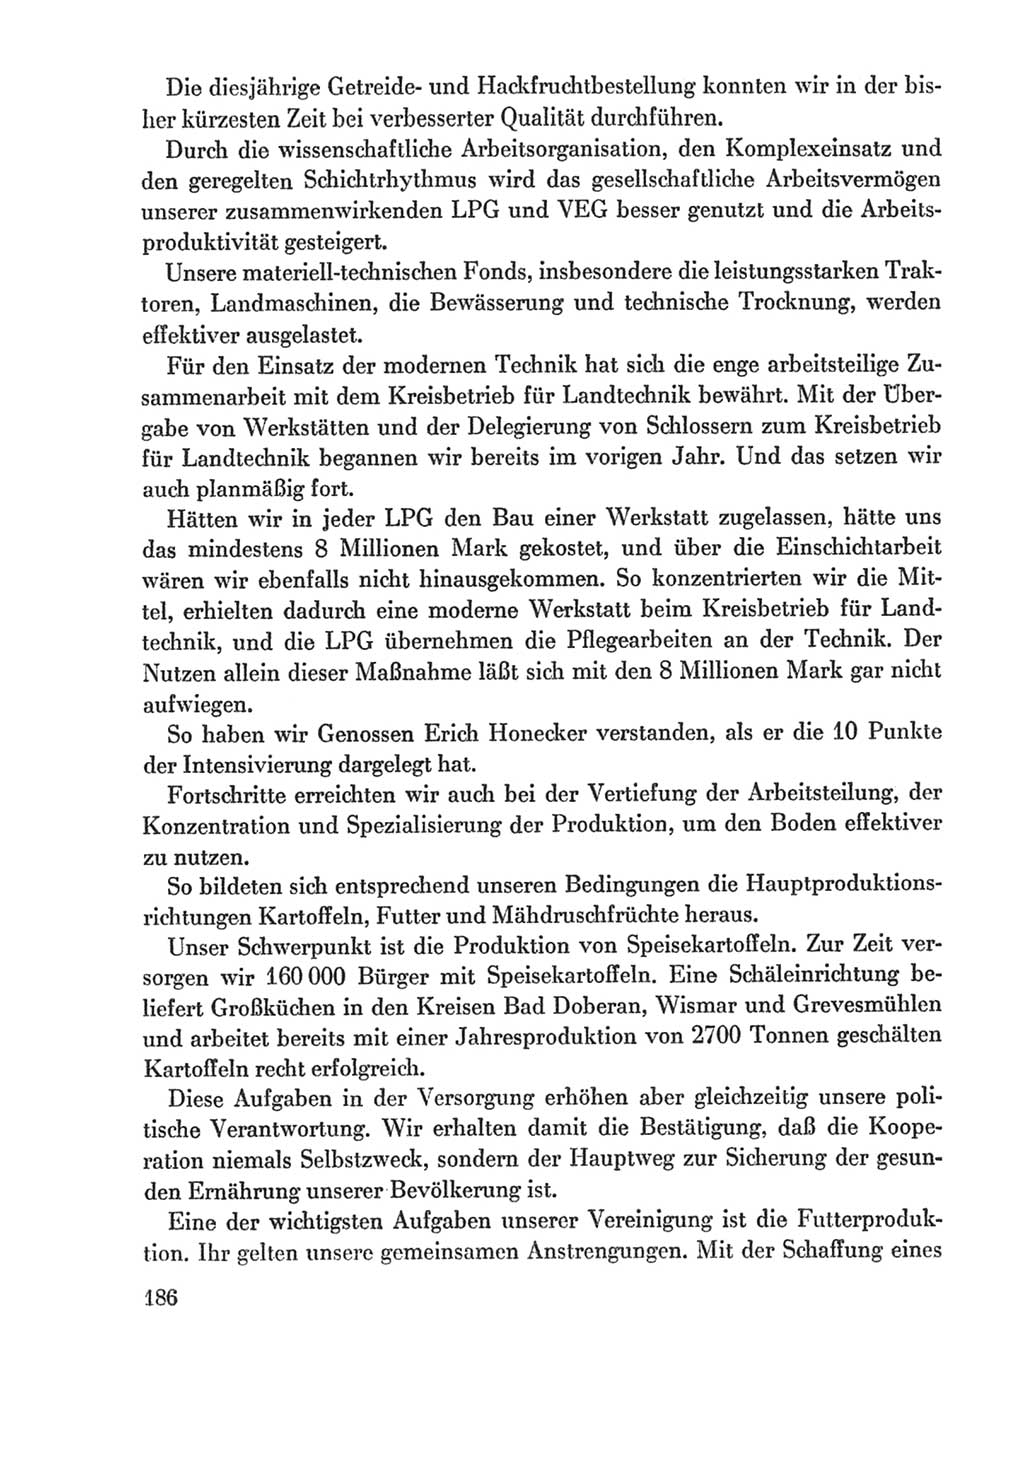 Protokoll der Verhandlungen des Ⅸ. Parteitages der Sozialistischen Einheitspartei Deutschlands (SED) [Deutsche Demokratische Republik (DDR)] 1976, Band 1, Seite 186 (Prot. Verh. Ⅸ. PT SED DDR 1976, Bd. 1, S. 186)